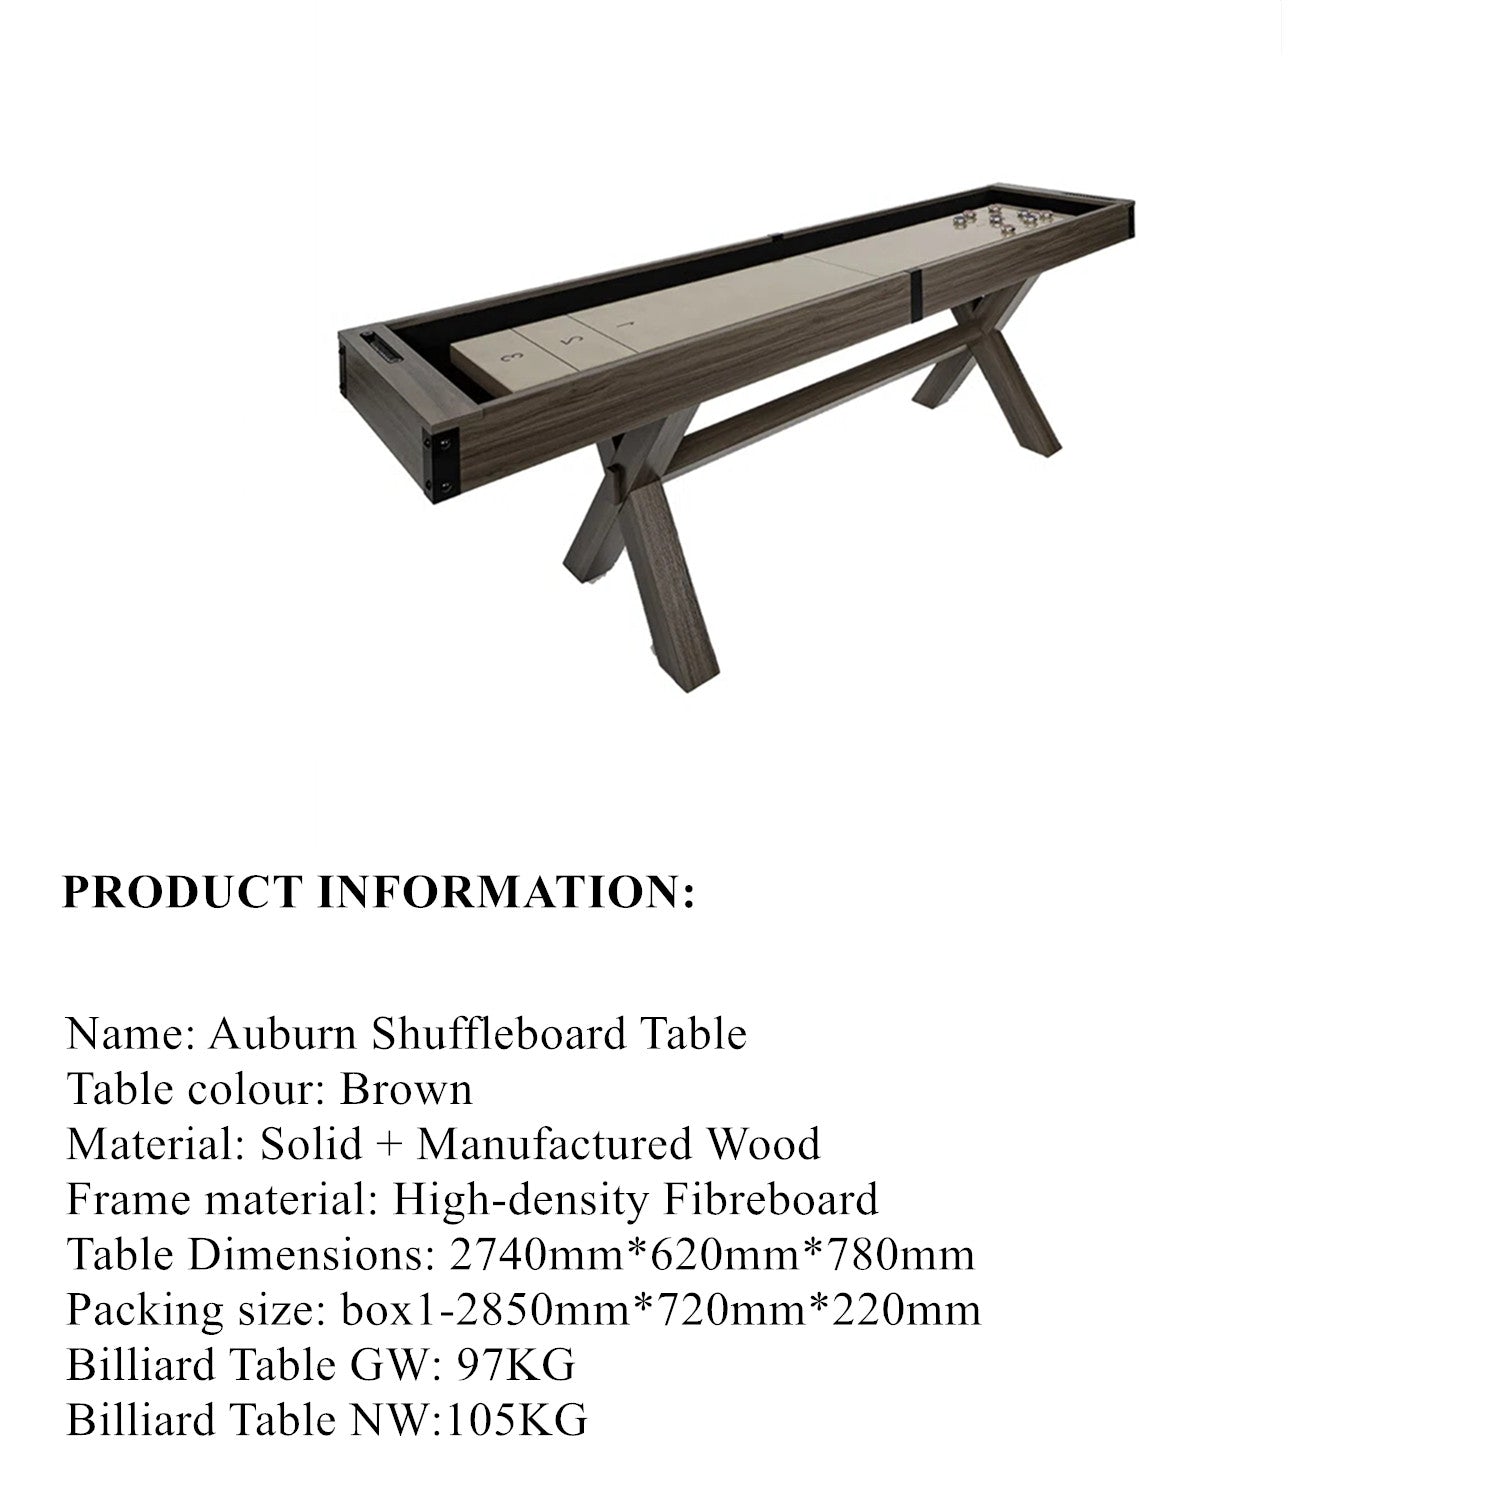 9FT Auburn Shuffleboard Table